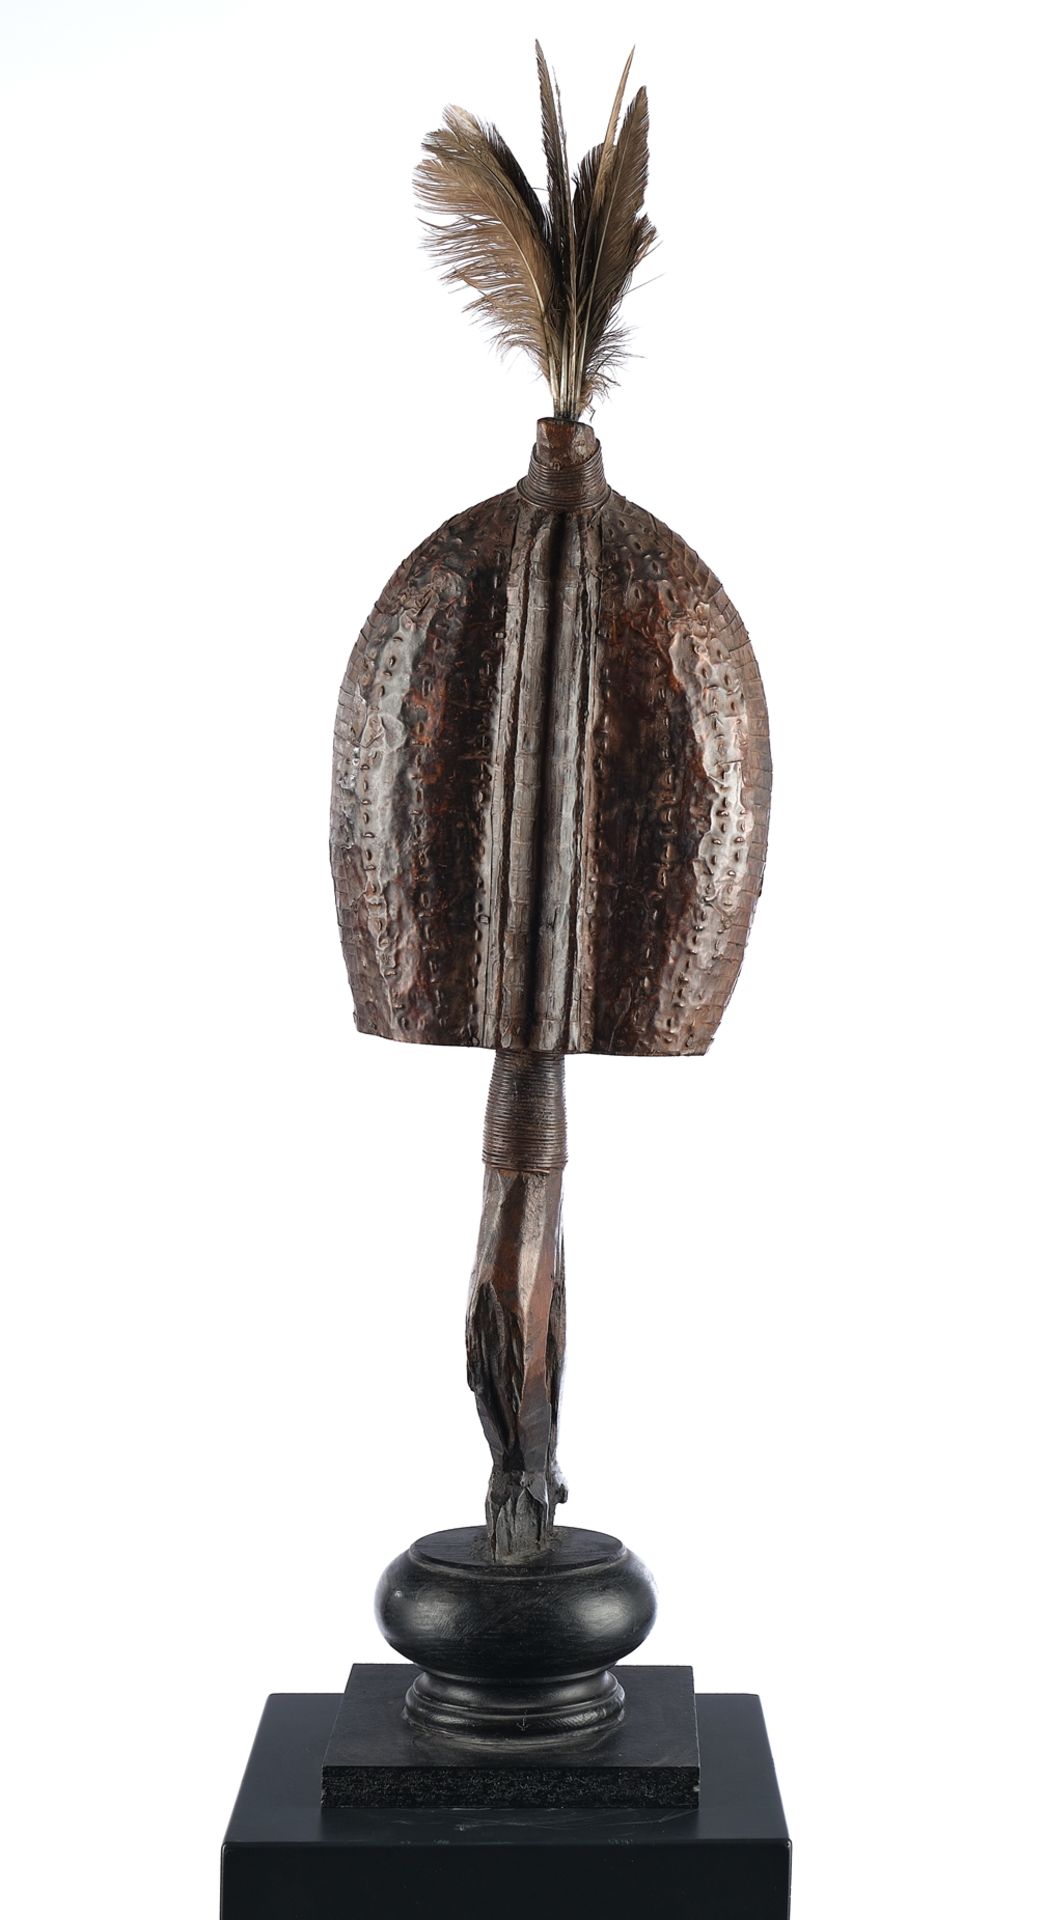 Reliquienfigur, Mahongwe, Gabun, Afrika, Grabwächter aus Holz, mit Metallstreifen und Blech belegt, - Bild 3 aus 4